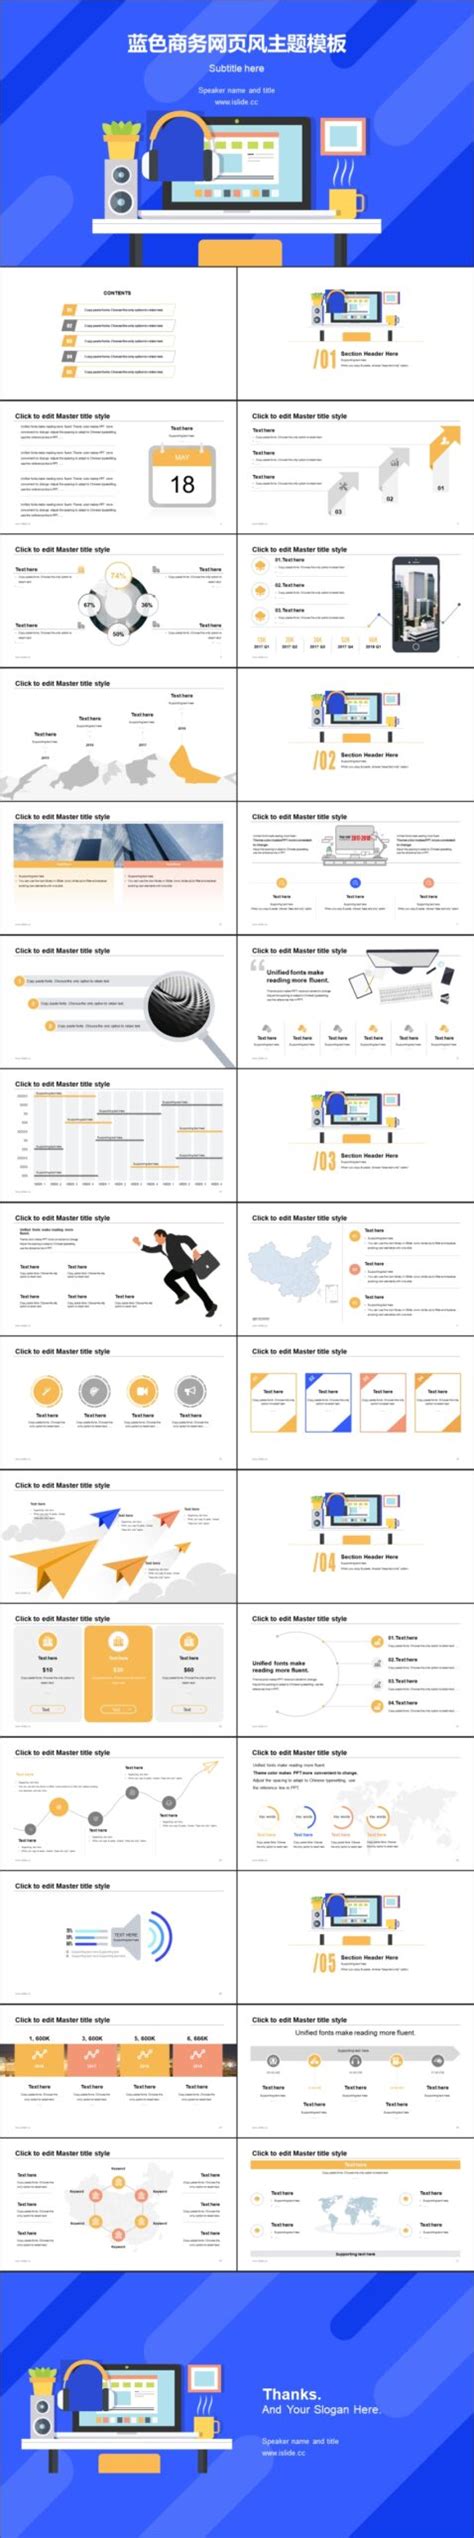 制作Presentation Slide的8个网站 模板素材 | GOXUAN